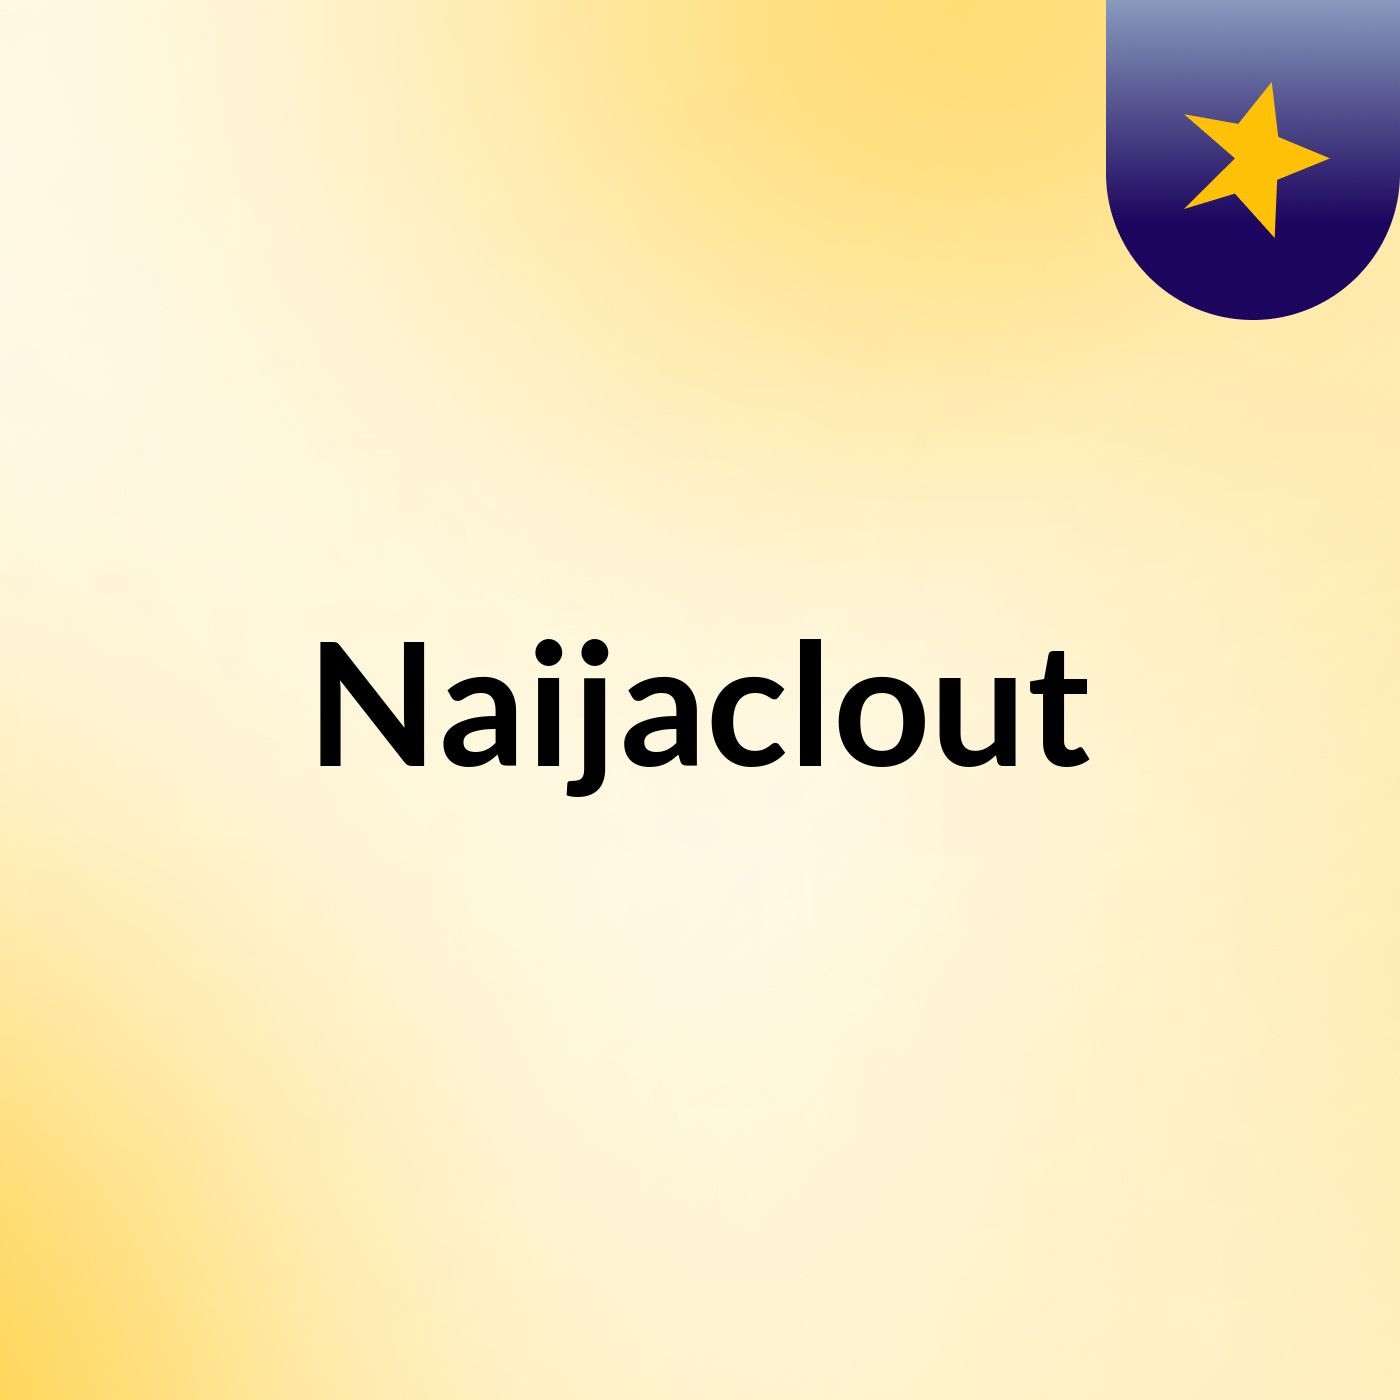 Naijaclout